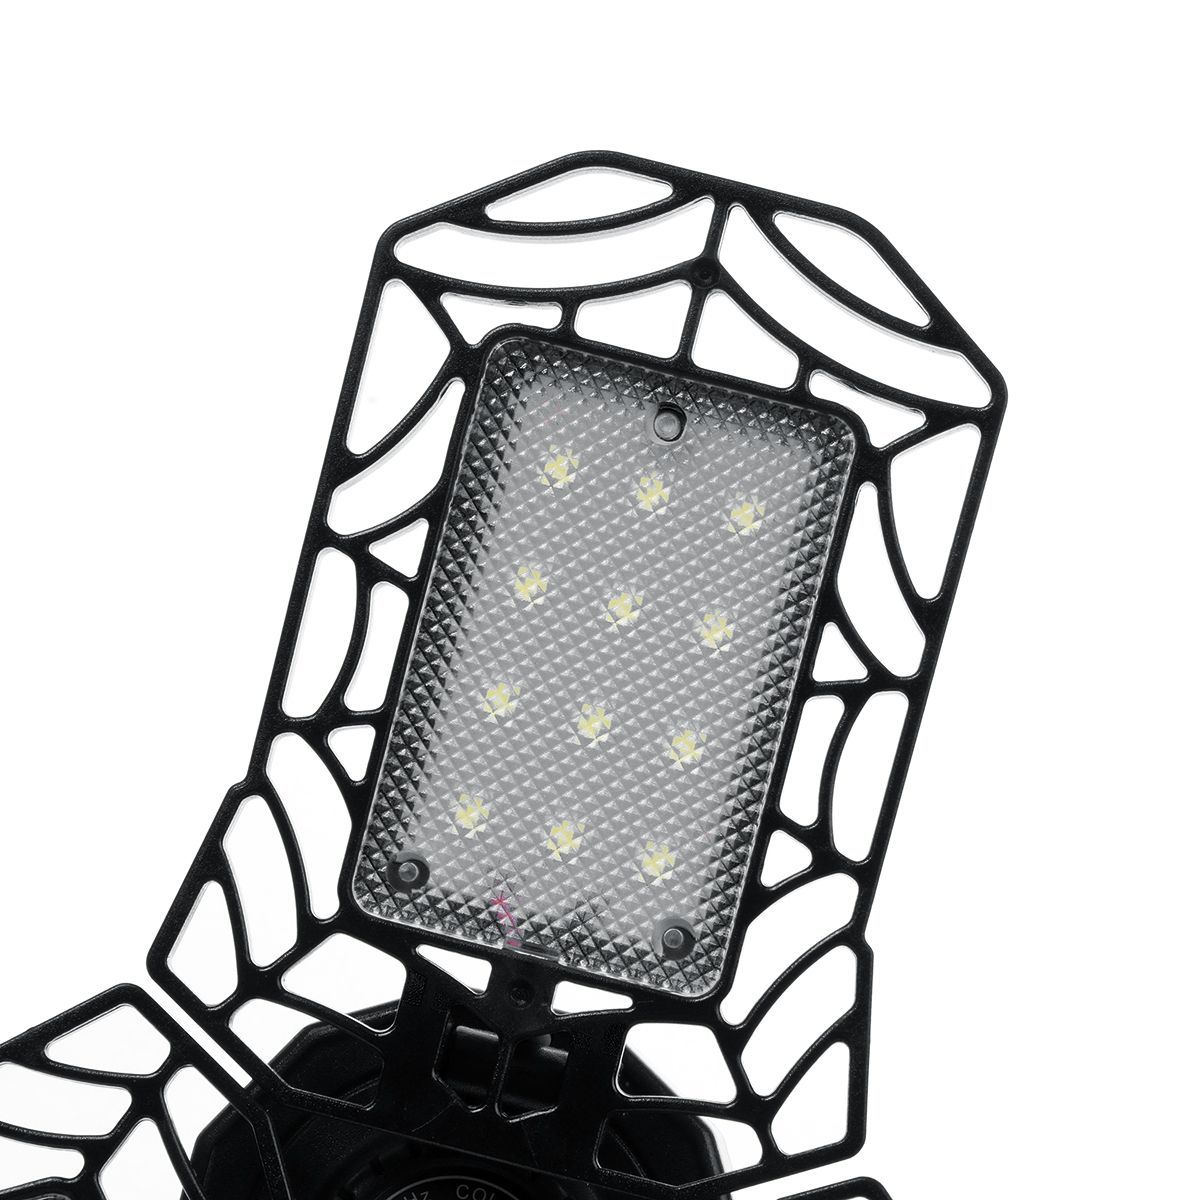 E27-LED-Garage-Light-Bulb-Deformable-Ceiling-Fixture-Lights-Shop-Workshop-Lamp-1764170